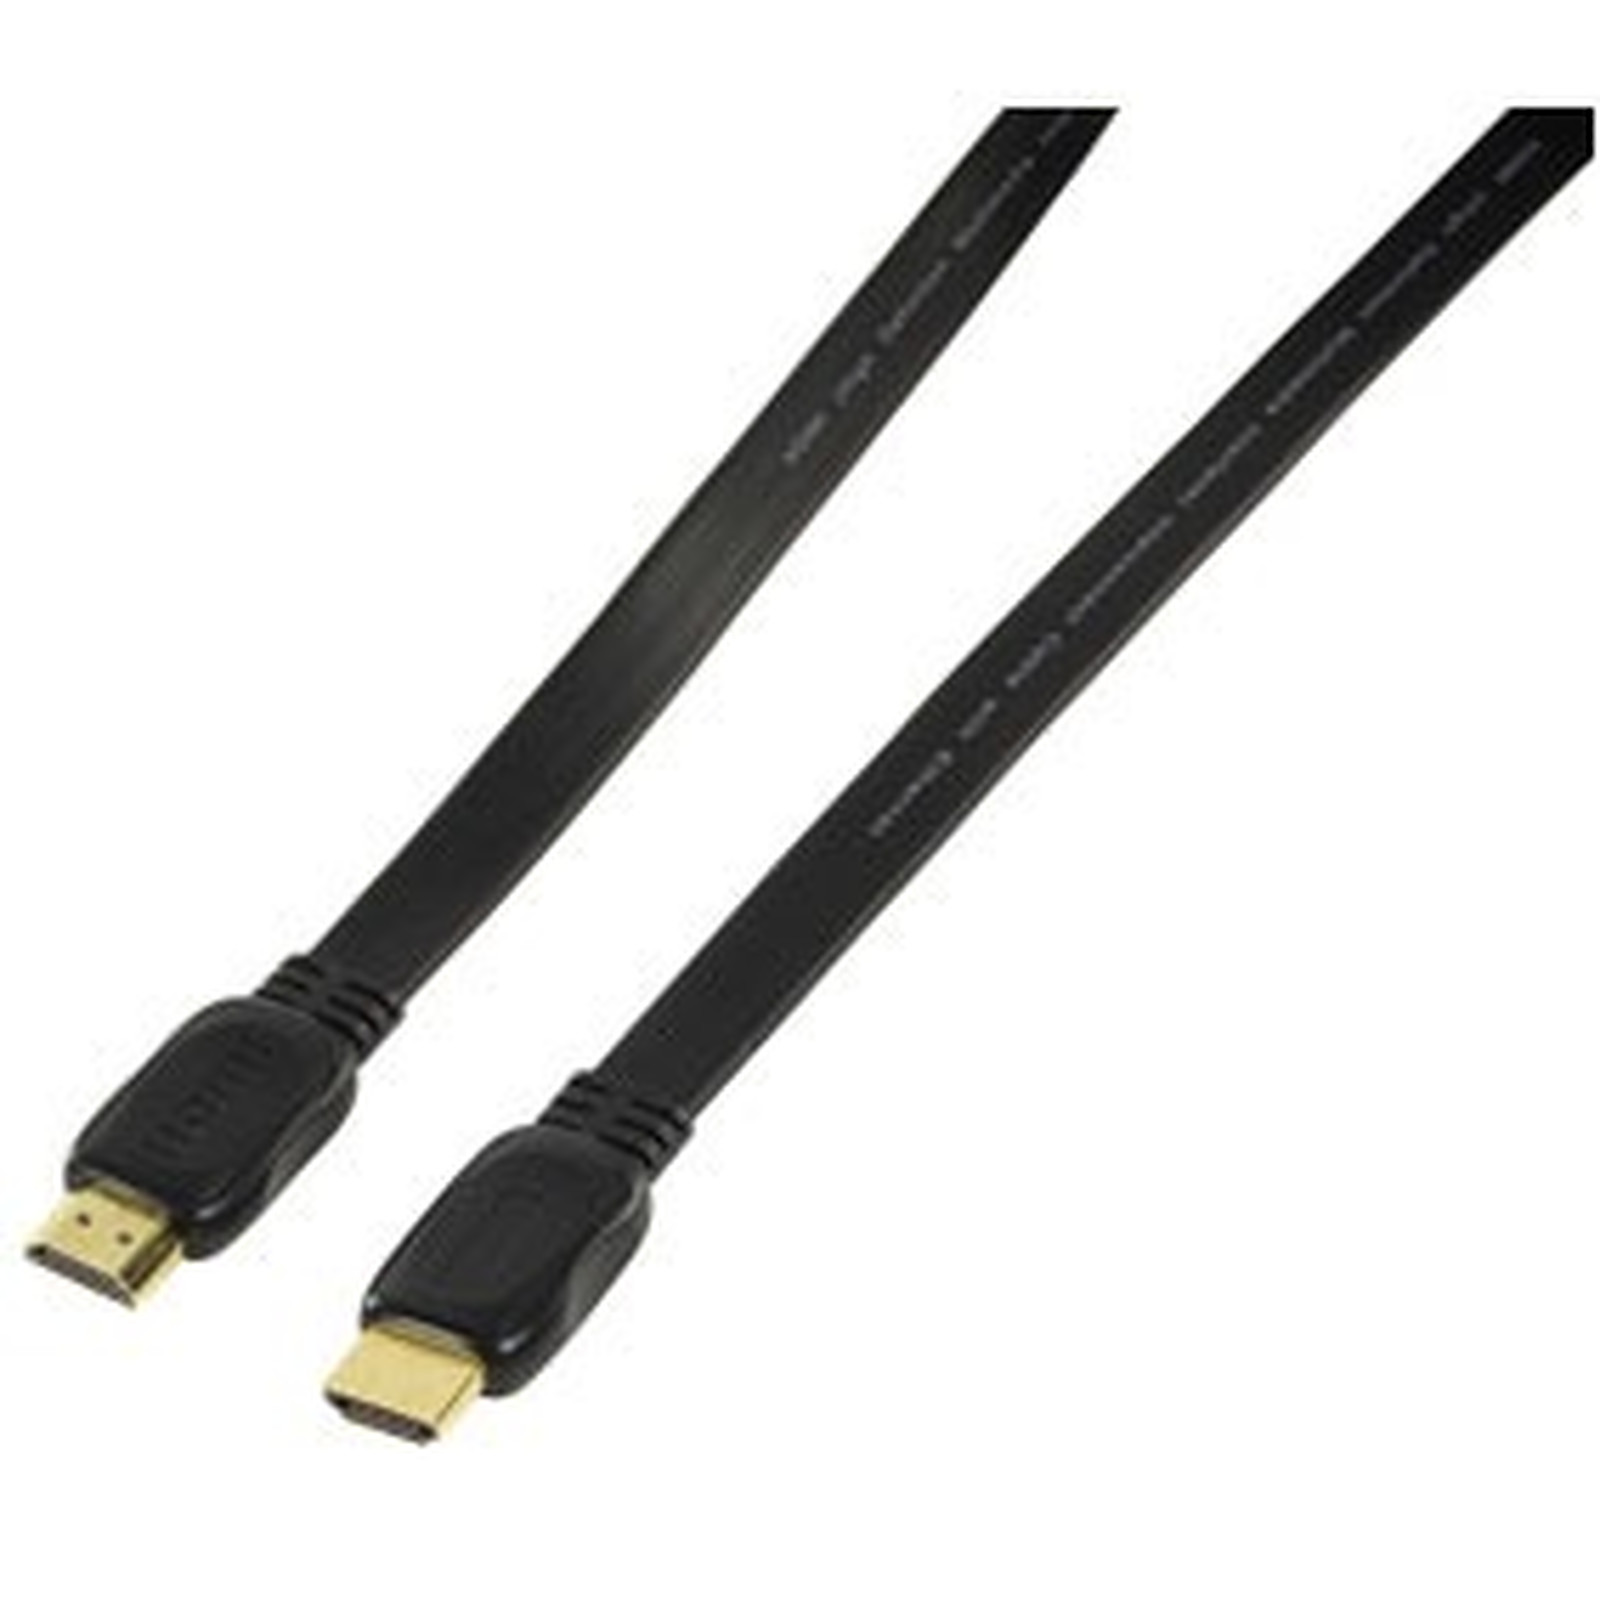 Cable HDMI 1.4 Ethernet Channel male/male (plat, plaque or) - (3 mètres) - HDMI Generique